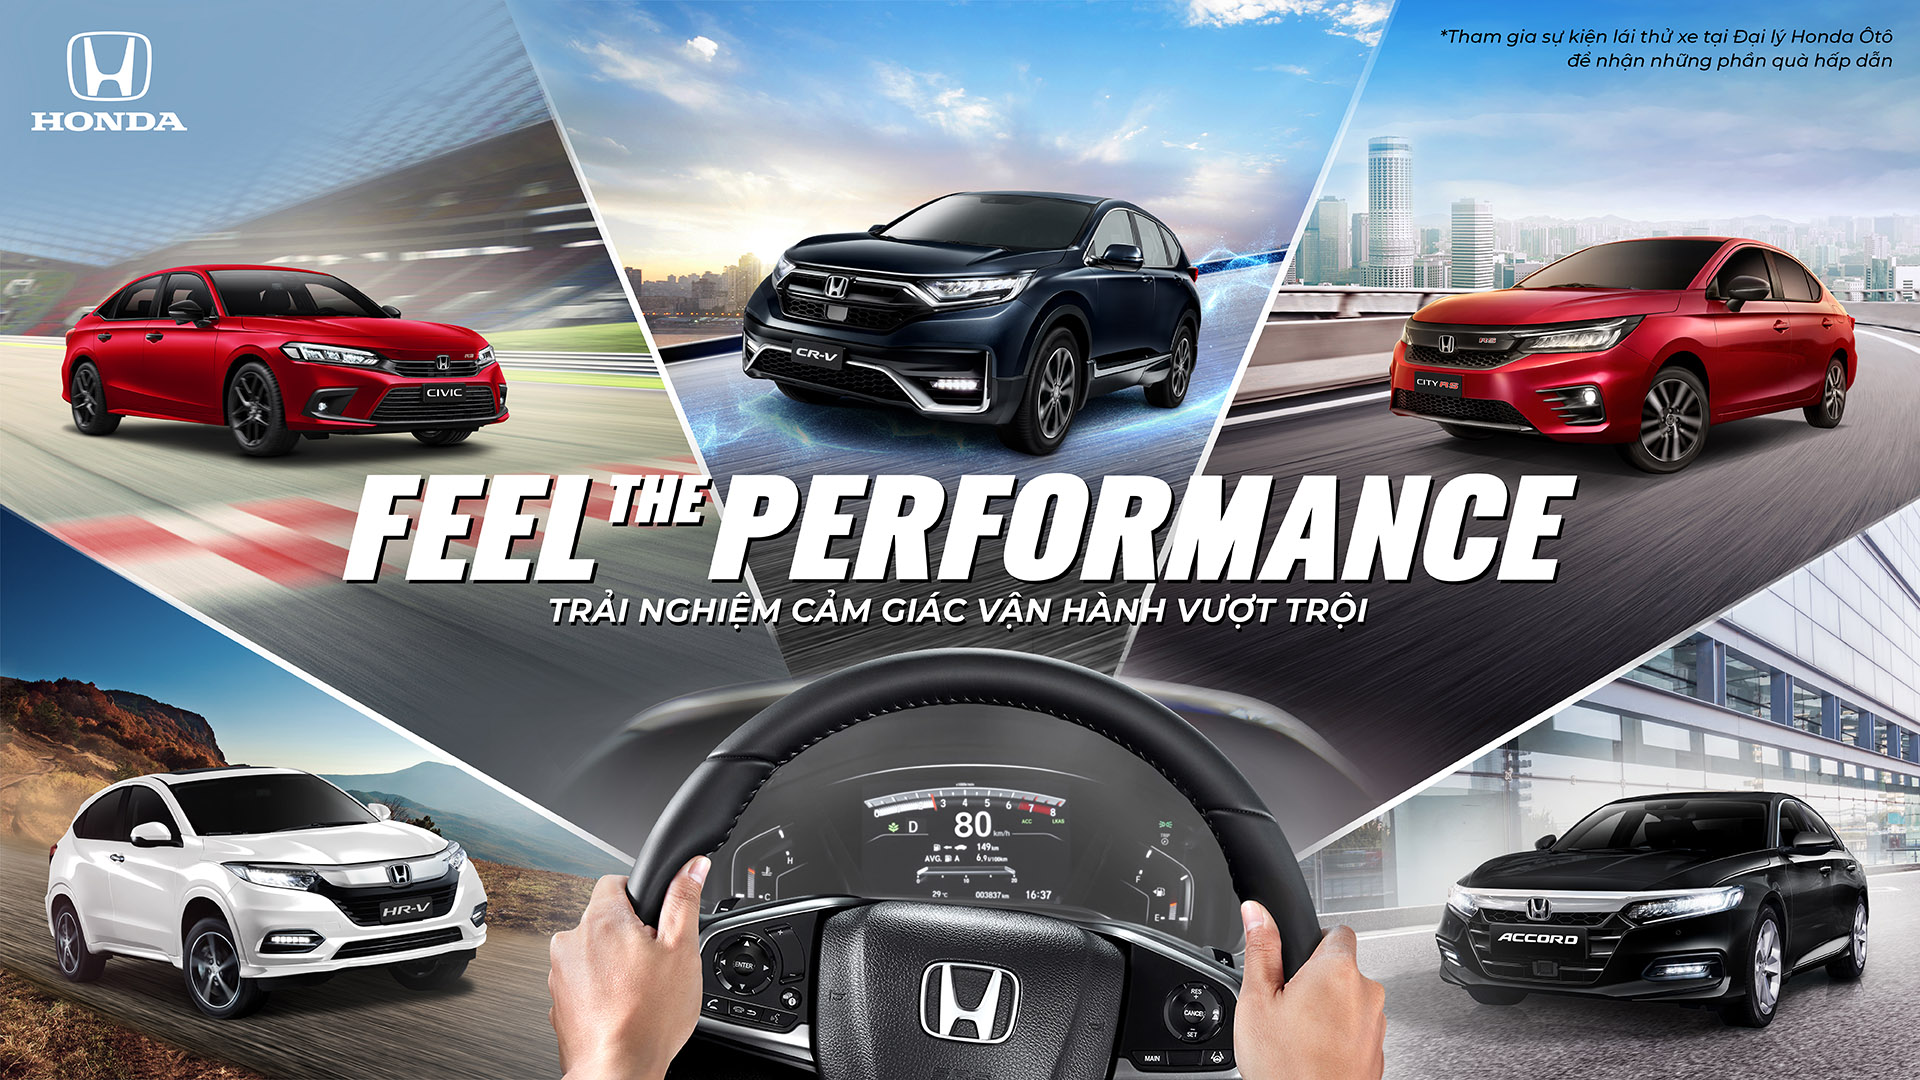 Honda Việt Nam và những nỗ lực tạo dựng giá trị bền vững honda-the-feel-performance.jpeg